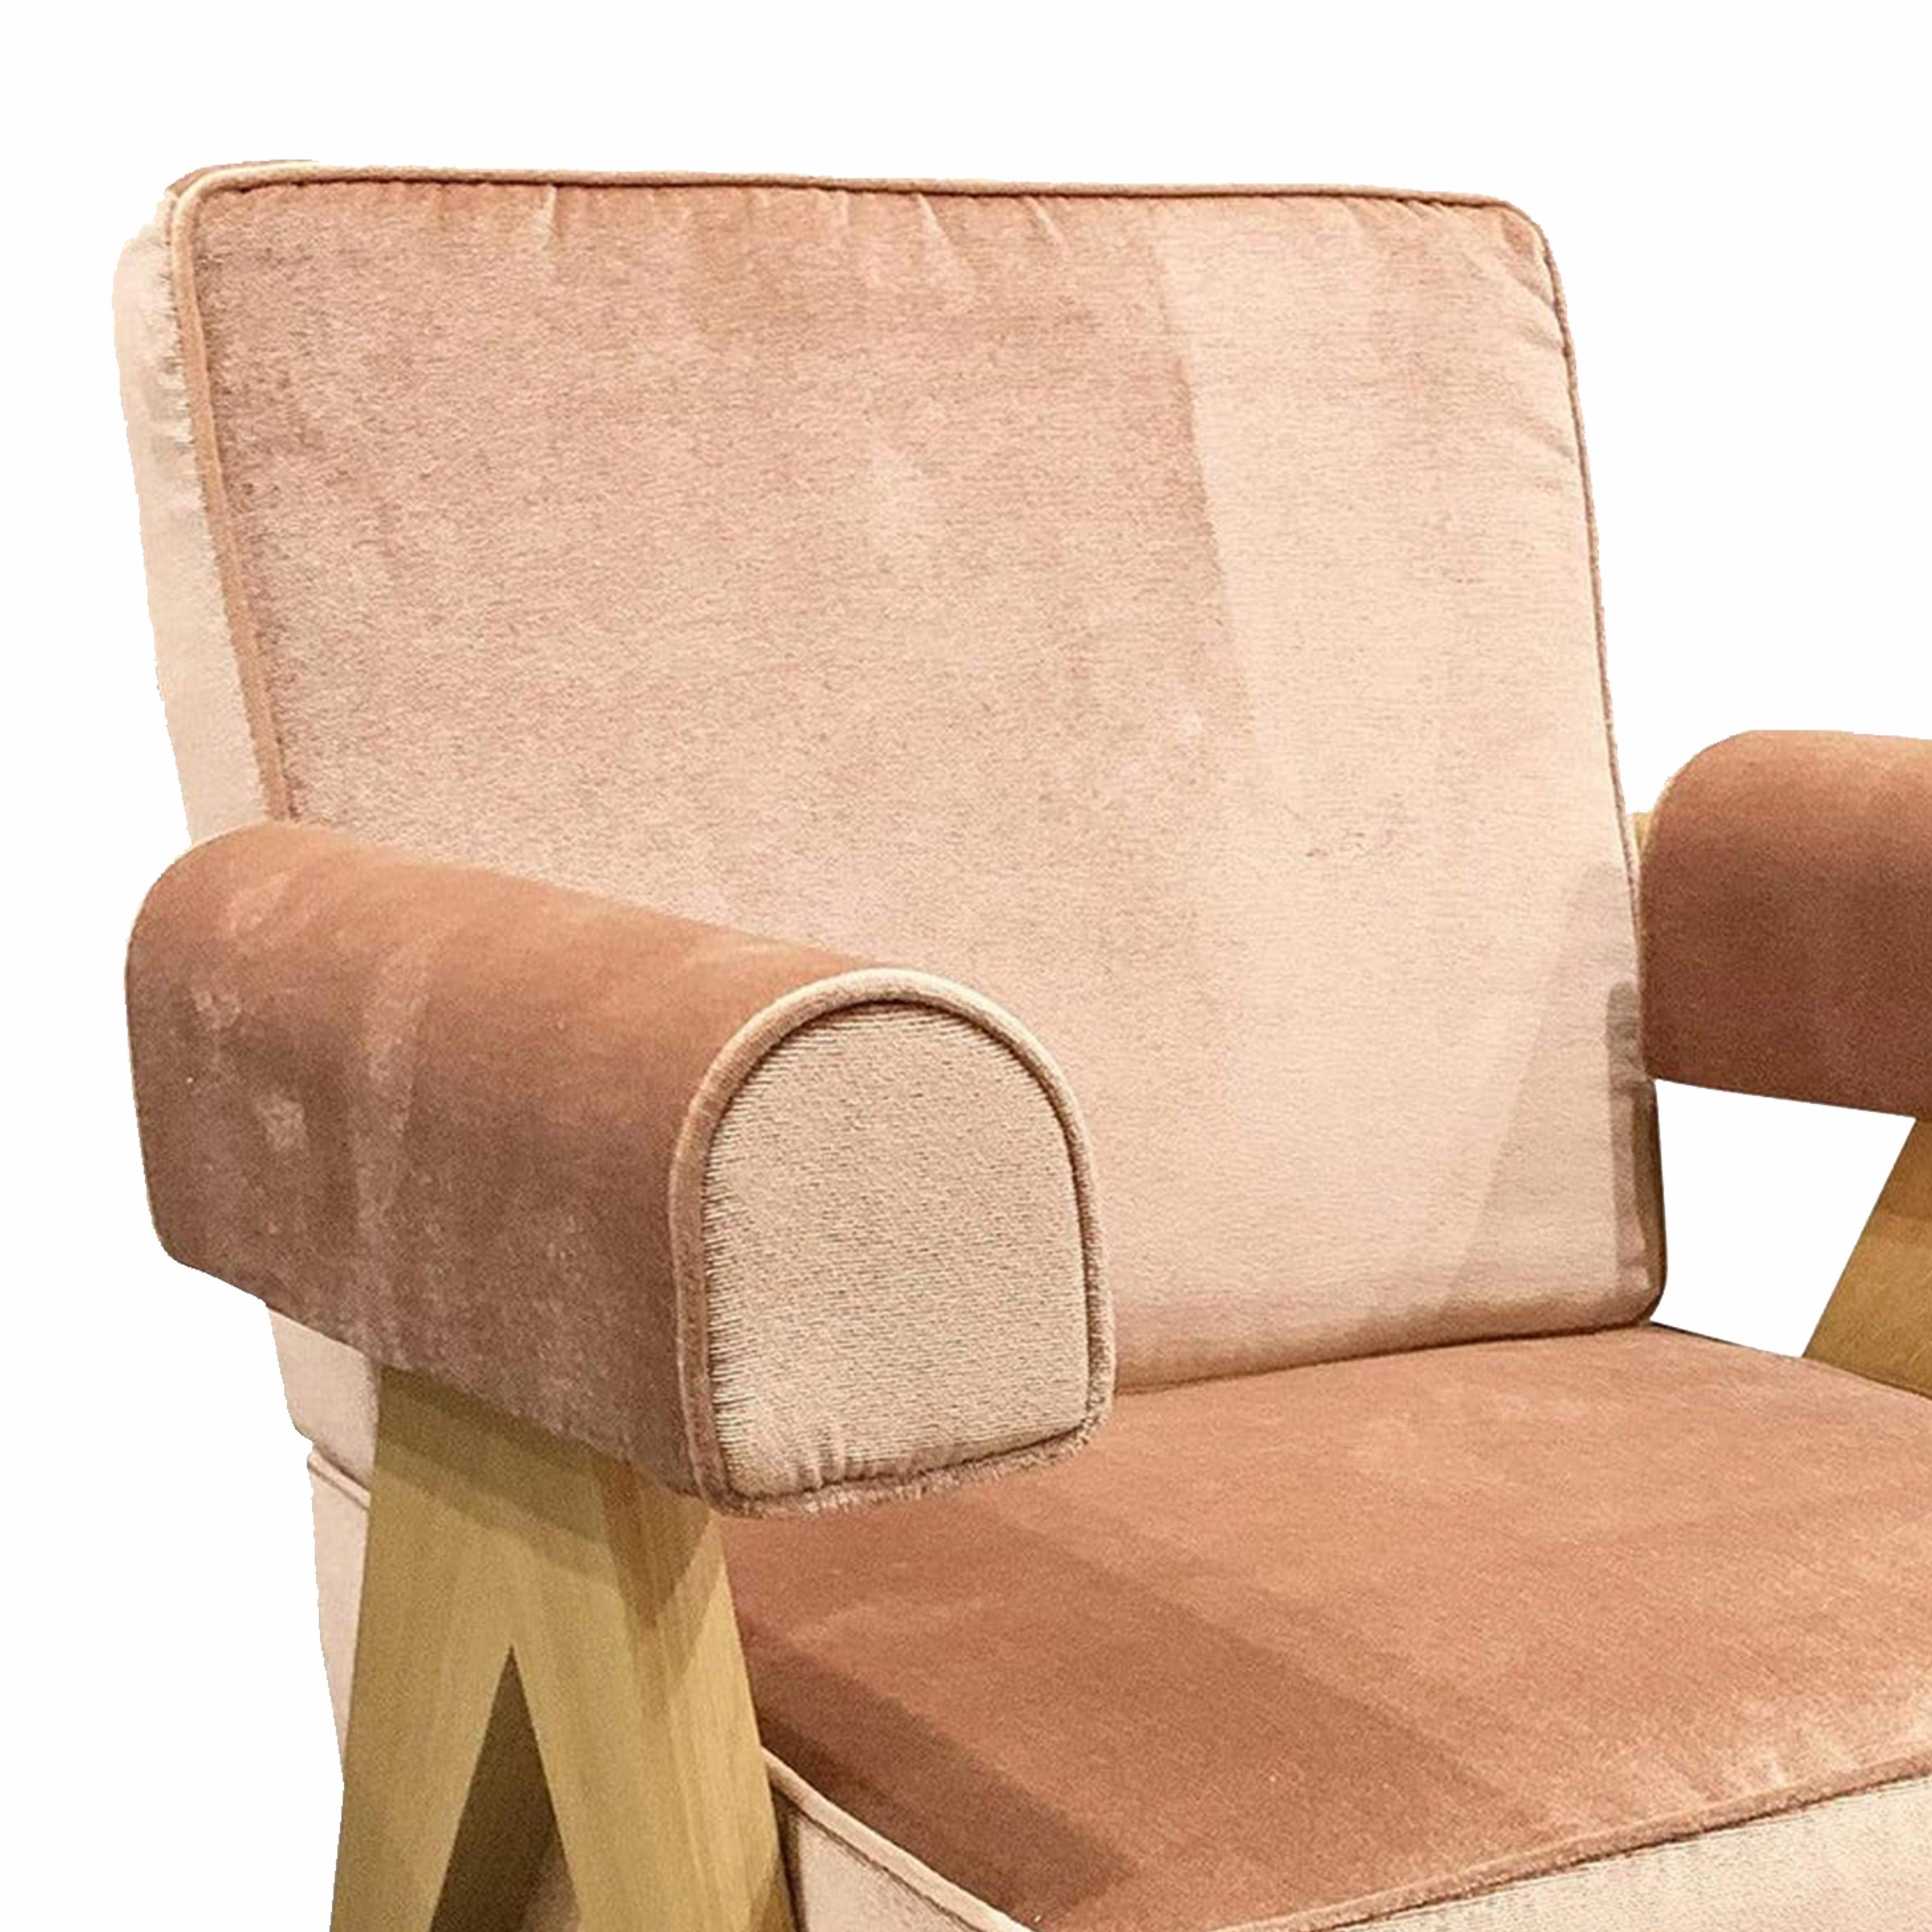 Sessel, entworfen von Pierre Jeanneret um 1950, neu aufgelegt im Jahr 2019.
Hergestellt von Cassina in Italien.

Die außergewöhnliche Architektur des 1951 von Le Corbusier entworfenen Capitol Complex in Chandigarh wurde von der UNESCO in die